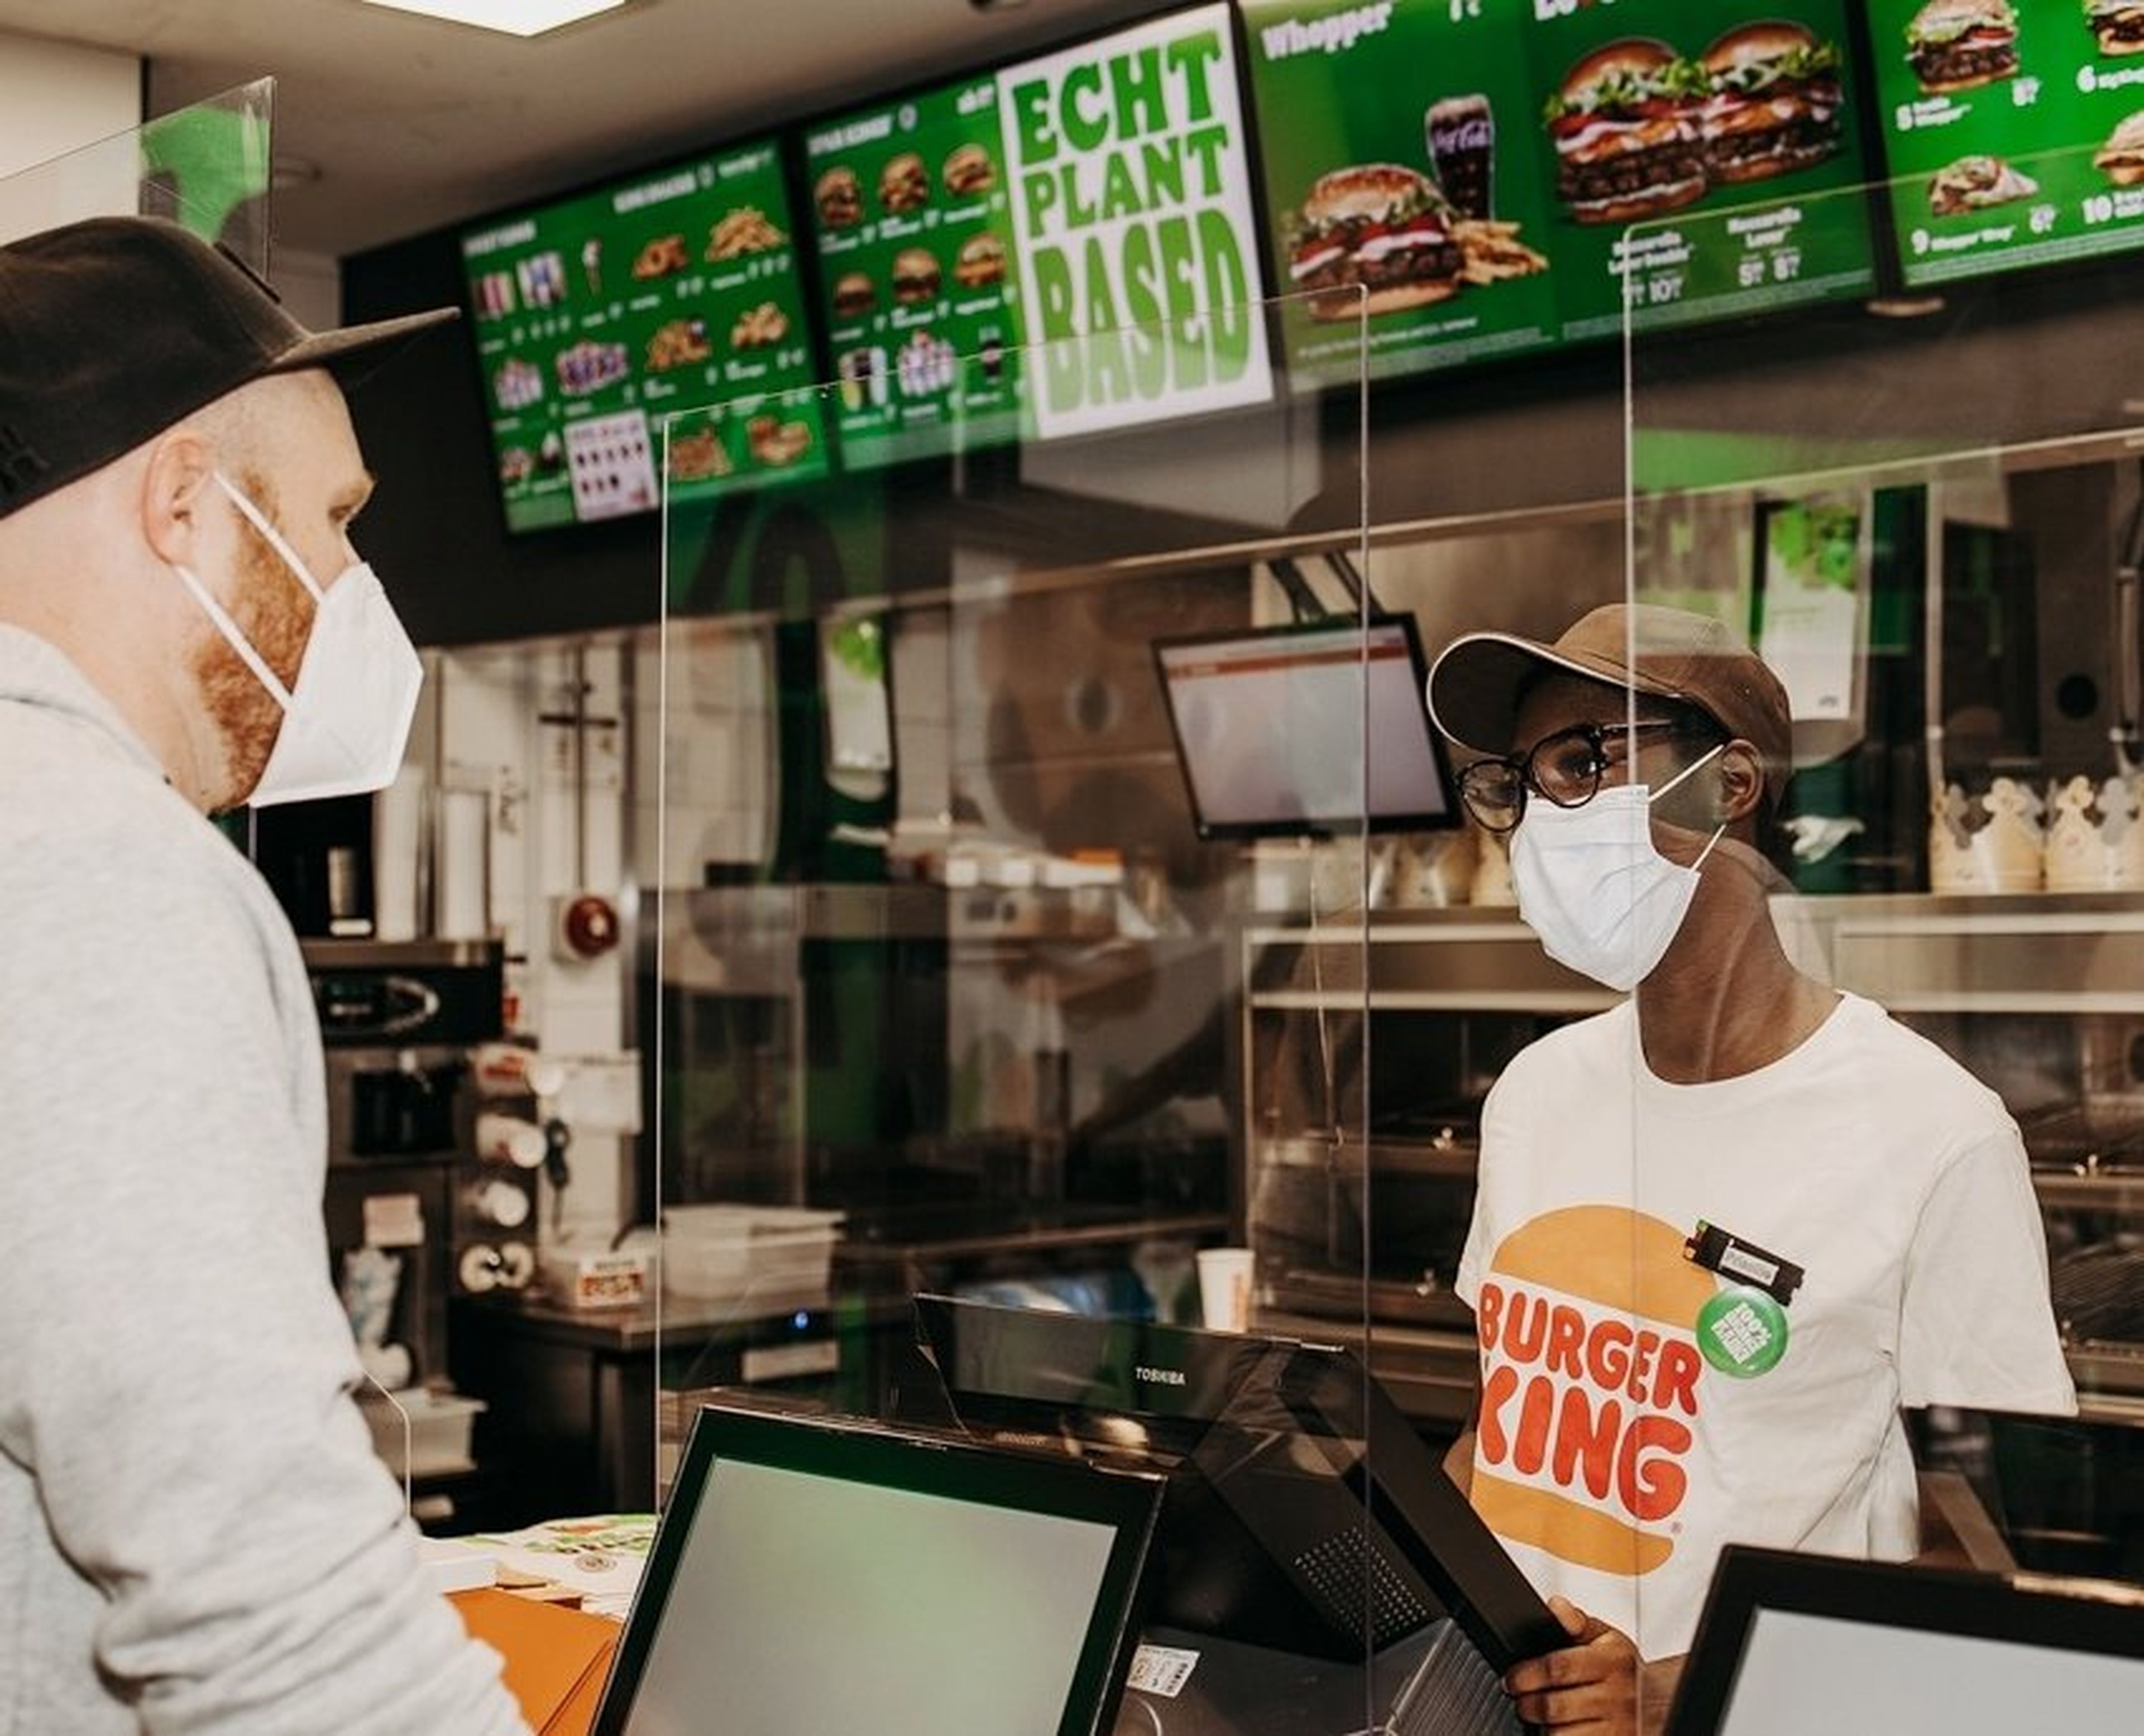 Burger King 100% vegetariano en Colonia (Alemania)